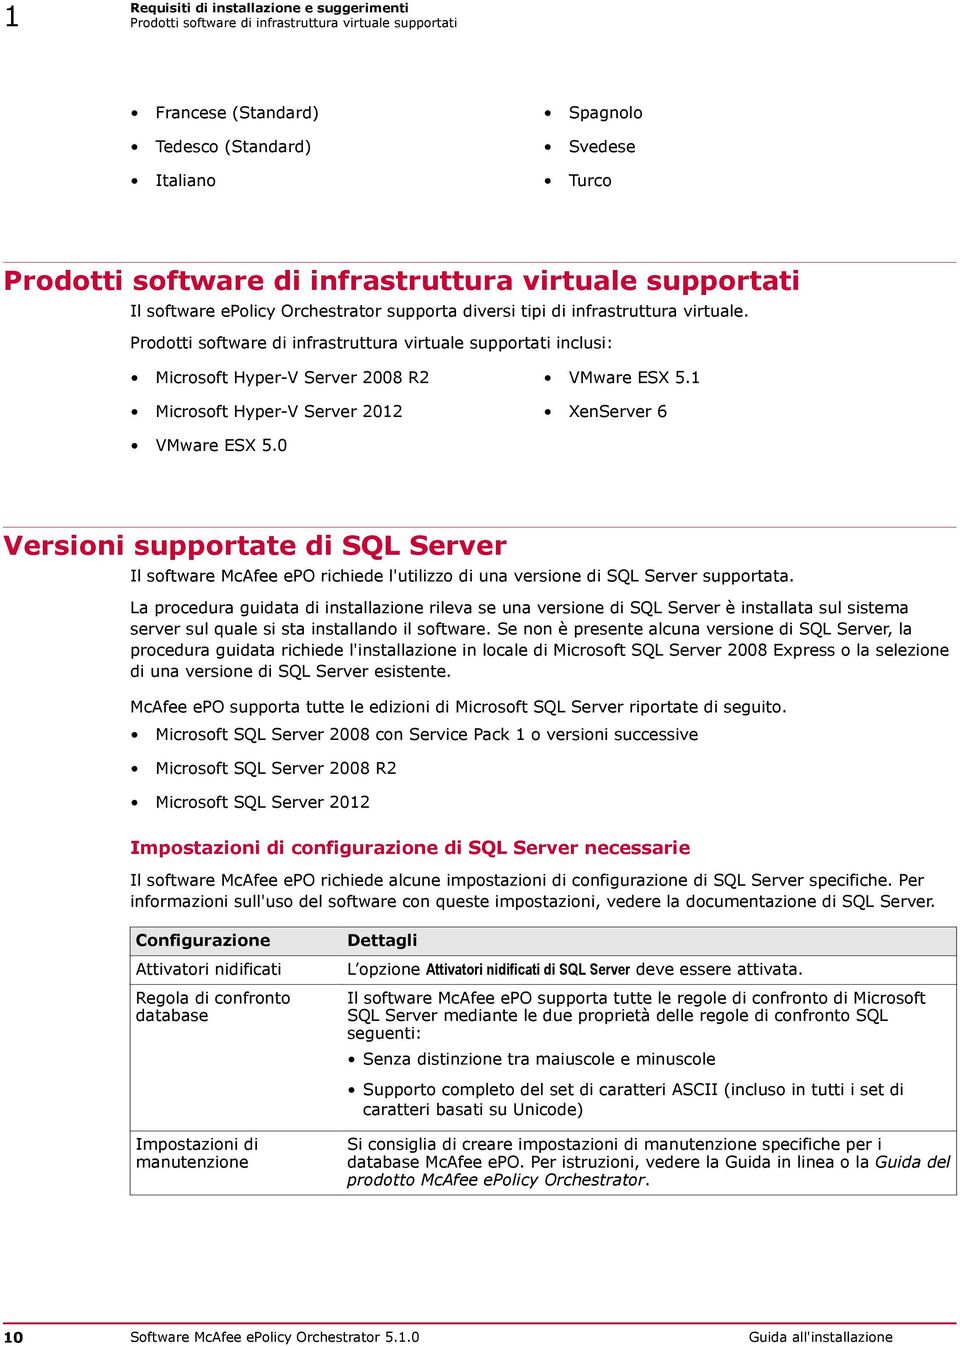 Prodotti software di infrastruttura virtuale supportati inclusi: Microsoft Hyper-V Server 2008 R2 VMware ESX 5.1 Microsoft Hyper-V Server 2012 XenServer 6 VMware ESX 5.